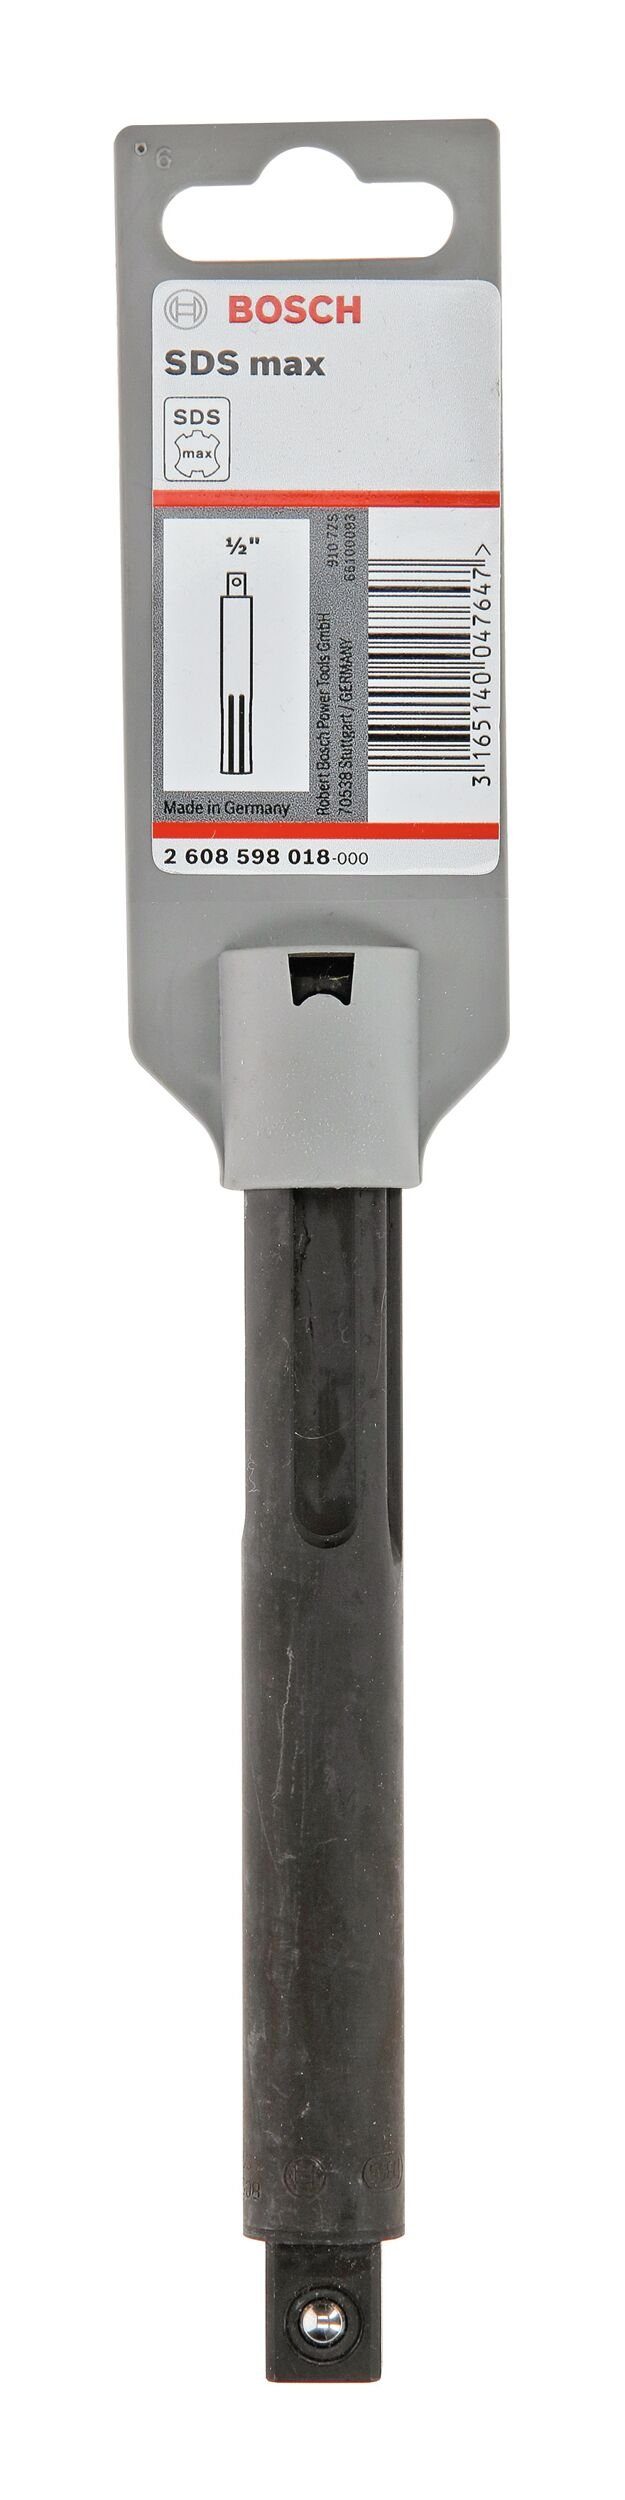 SDS - mm BOSCH 1/2" max Werkzeughalter Universalbohrer,